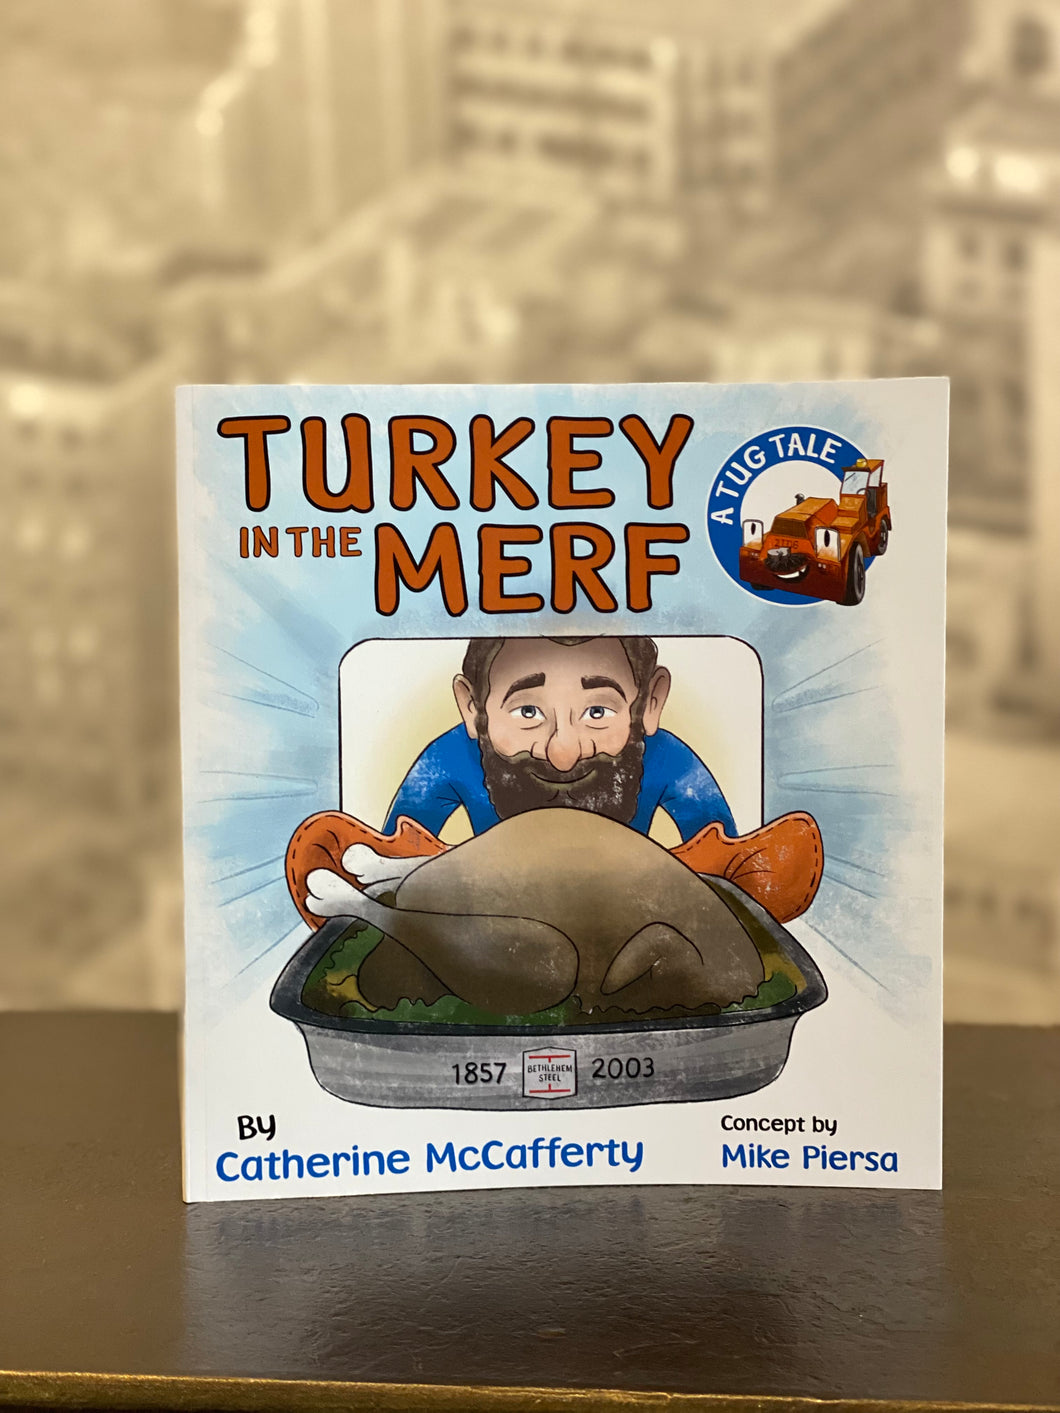 Turkey in the MERF